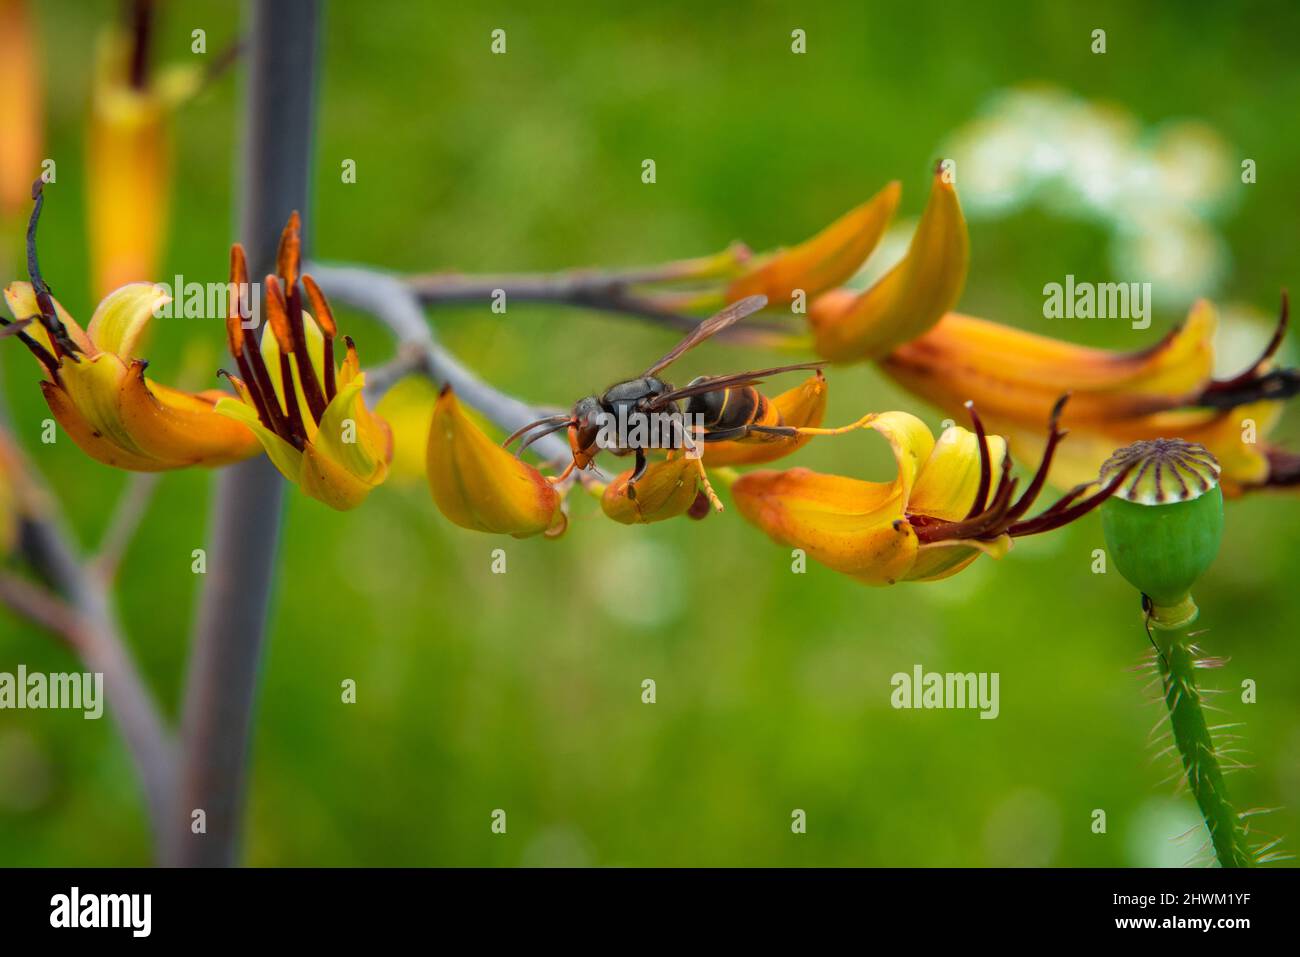 Asian hornet on yellow flower Stock Photo